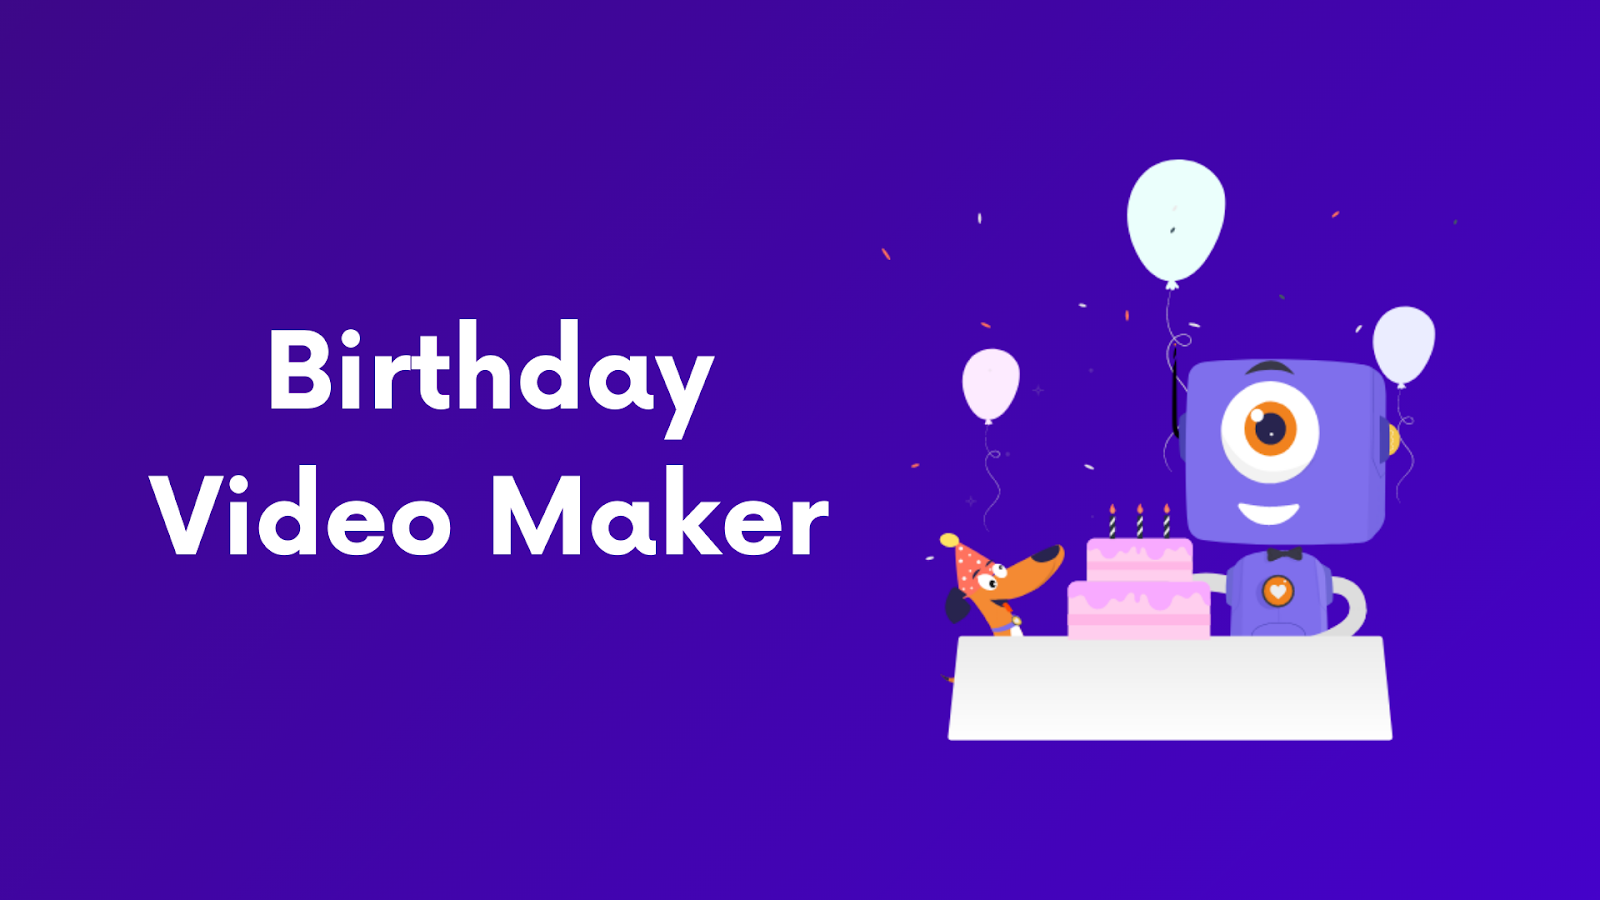 Tự tay làm một đoạn video hoành tráng cho người thân có sinh nhật đã đến rồi! Với phần mềm làm video sinh nhật, bạn có thể kết hợp âm nhạc, hình ảnh và văn bản tạo ra một sản phẩm chất lượng cao hoàn toàn miễn phí.